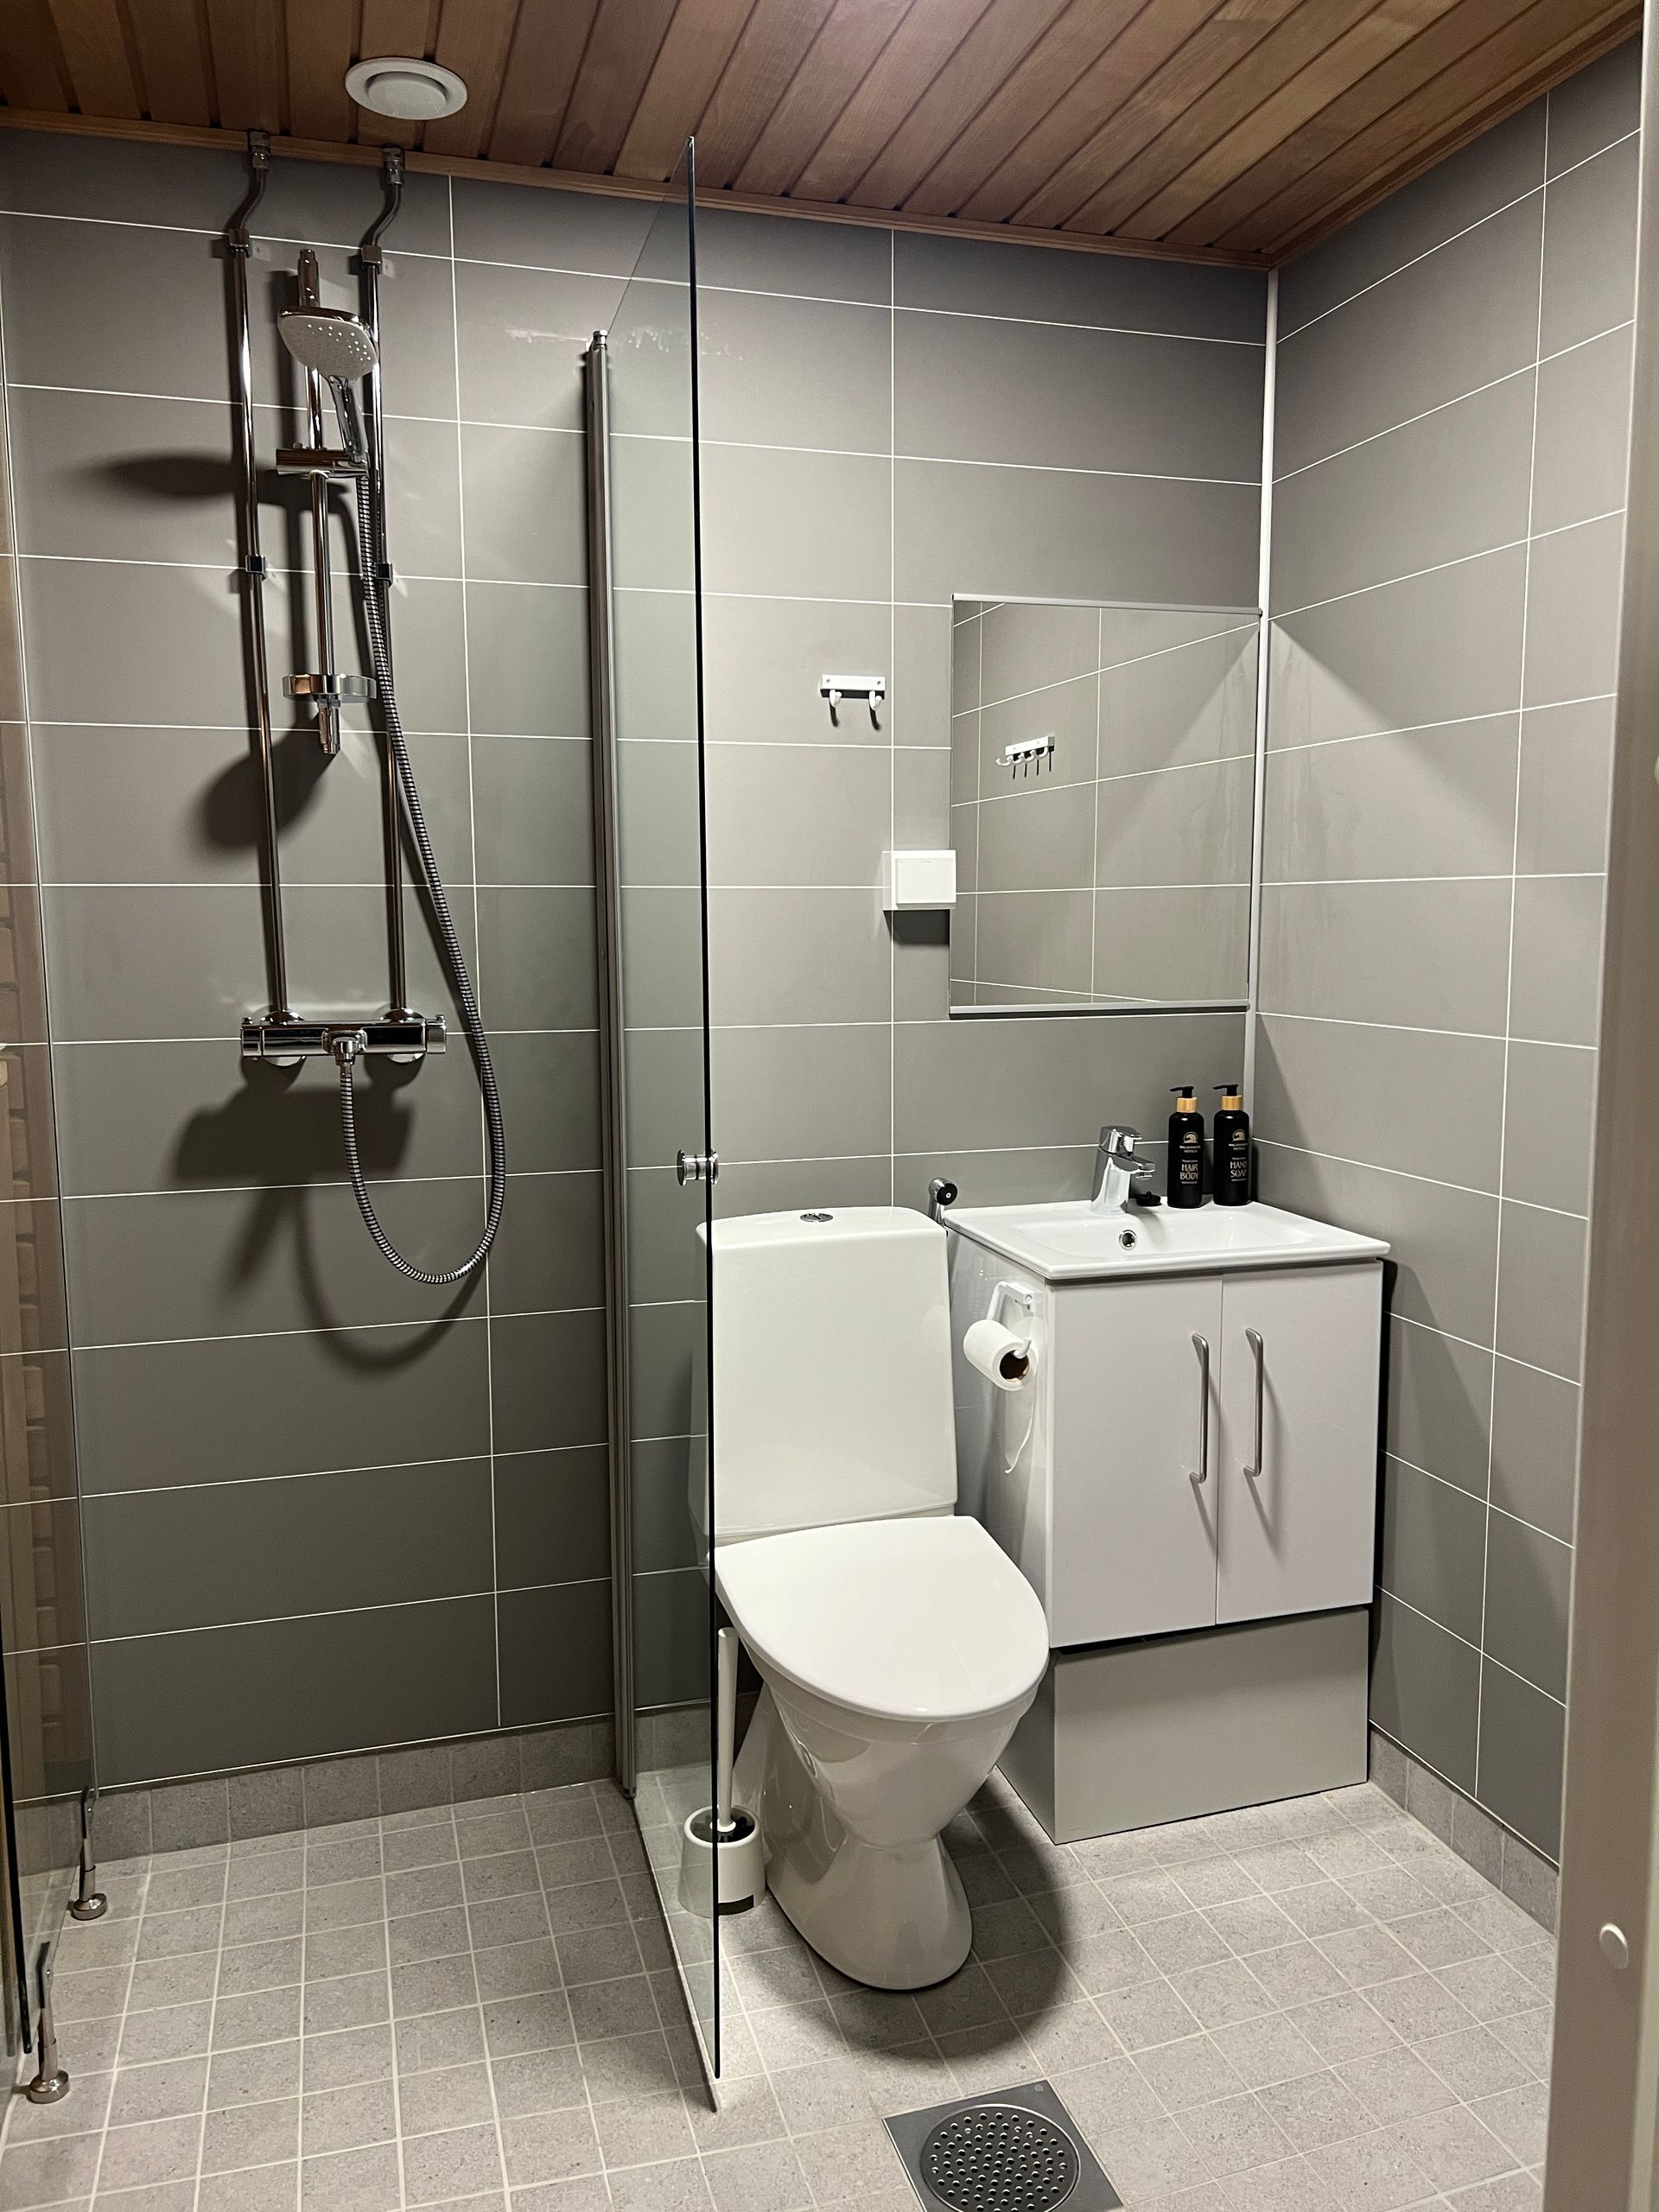 Een badkamer met toilet, wastafel en douche.